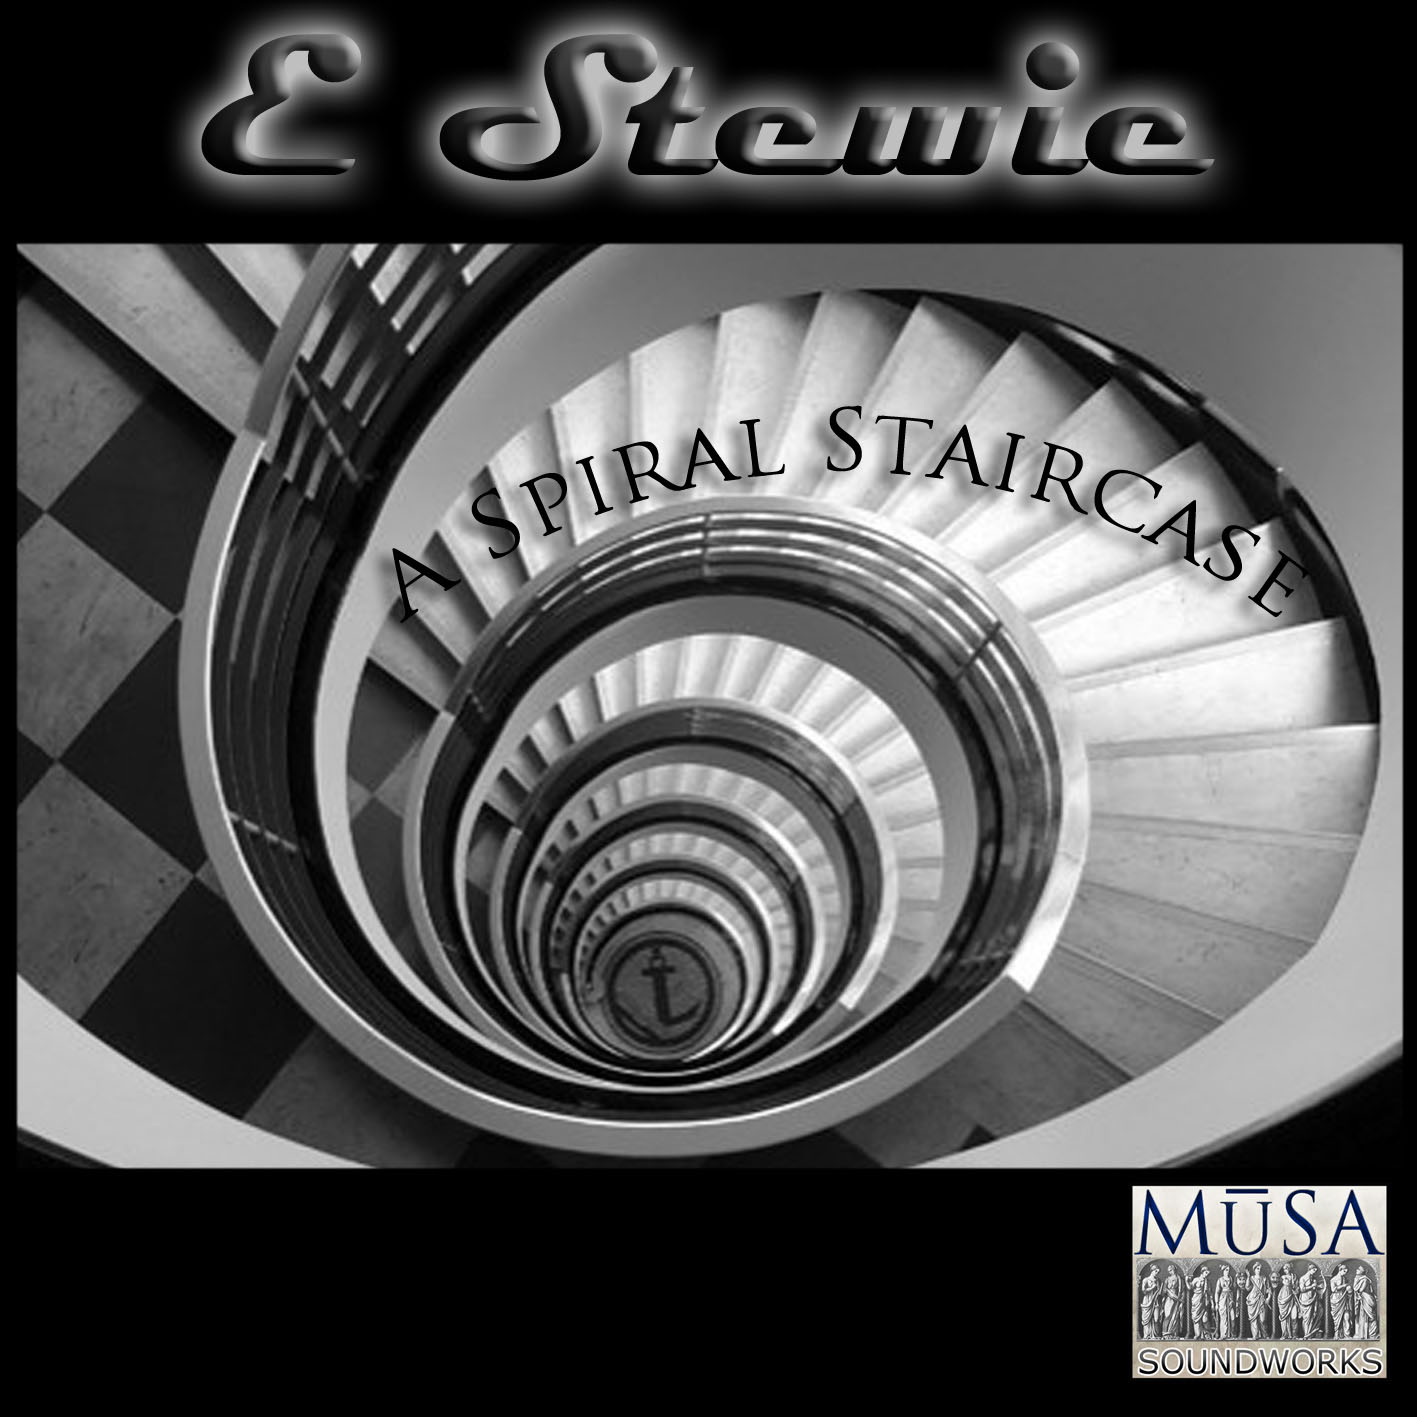 E Stew - A Spiral Staircase - album cover - 2011